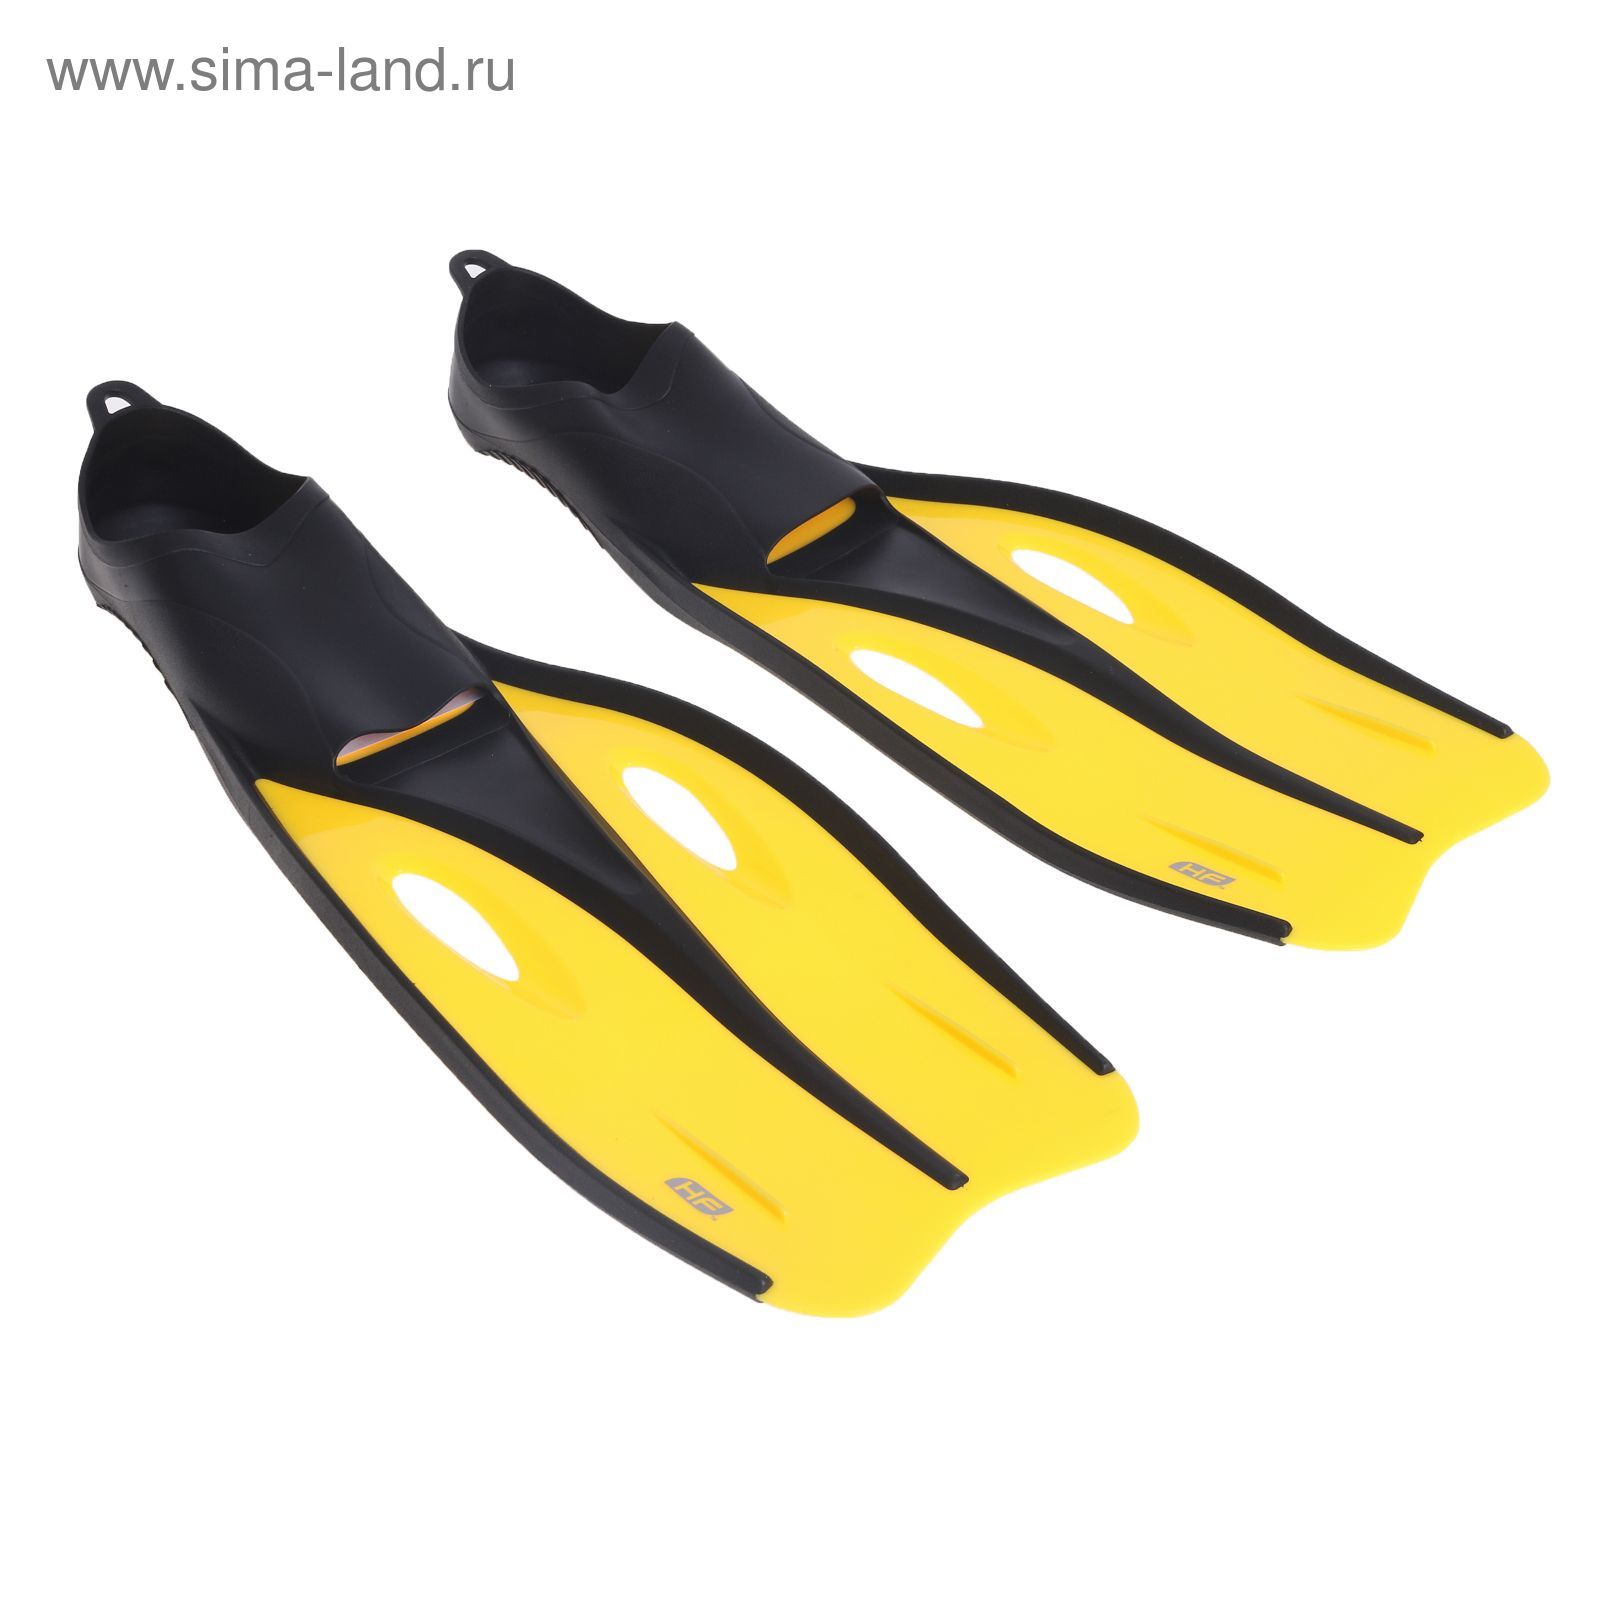 Ласты Endura Dive, для взрослых, размер 38-39, цвет МИКС Bestway